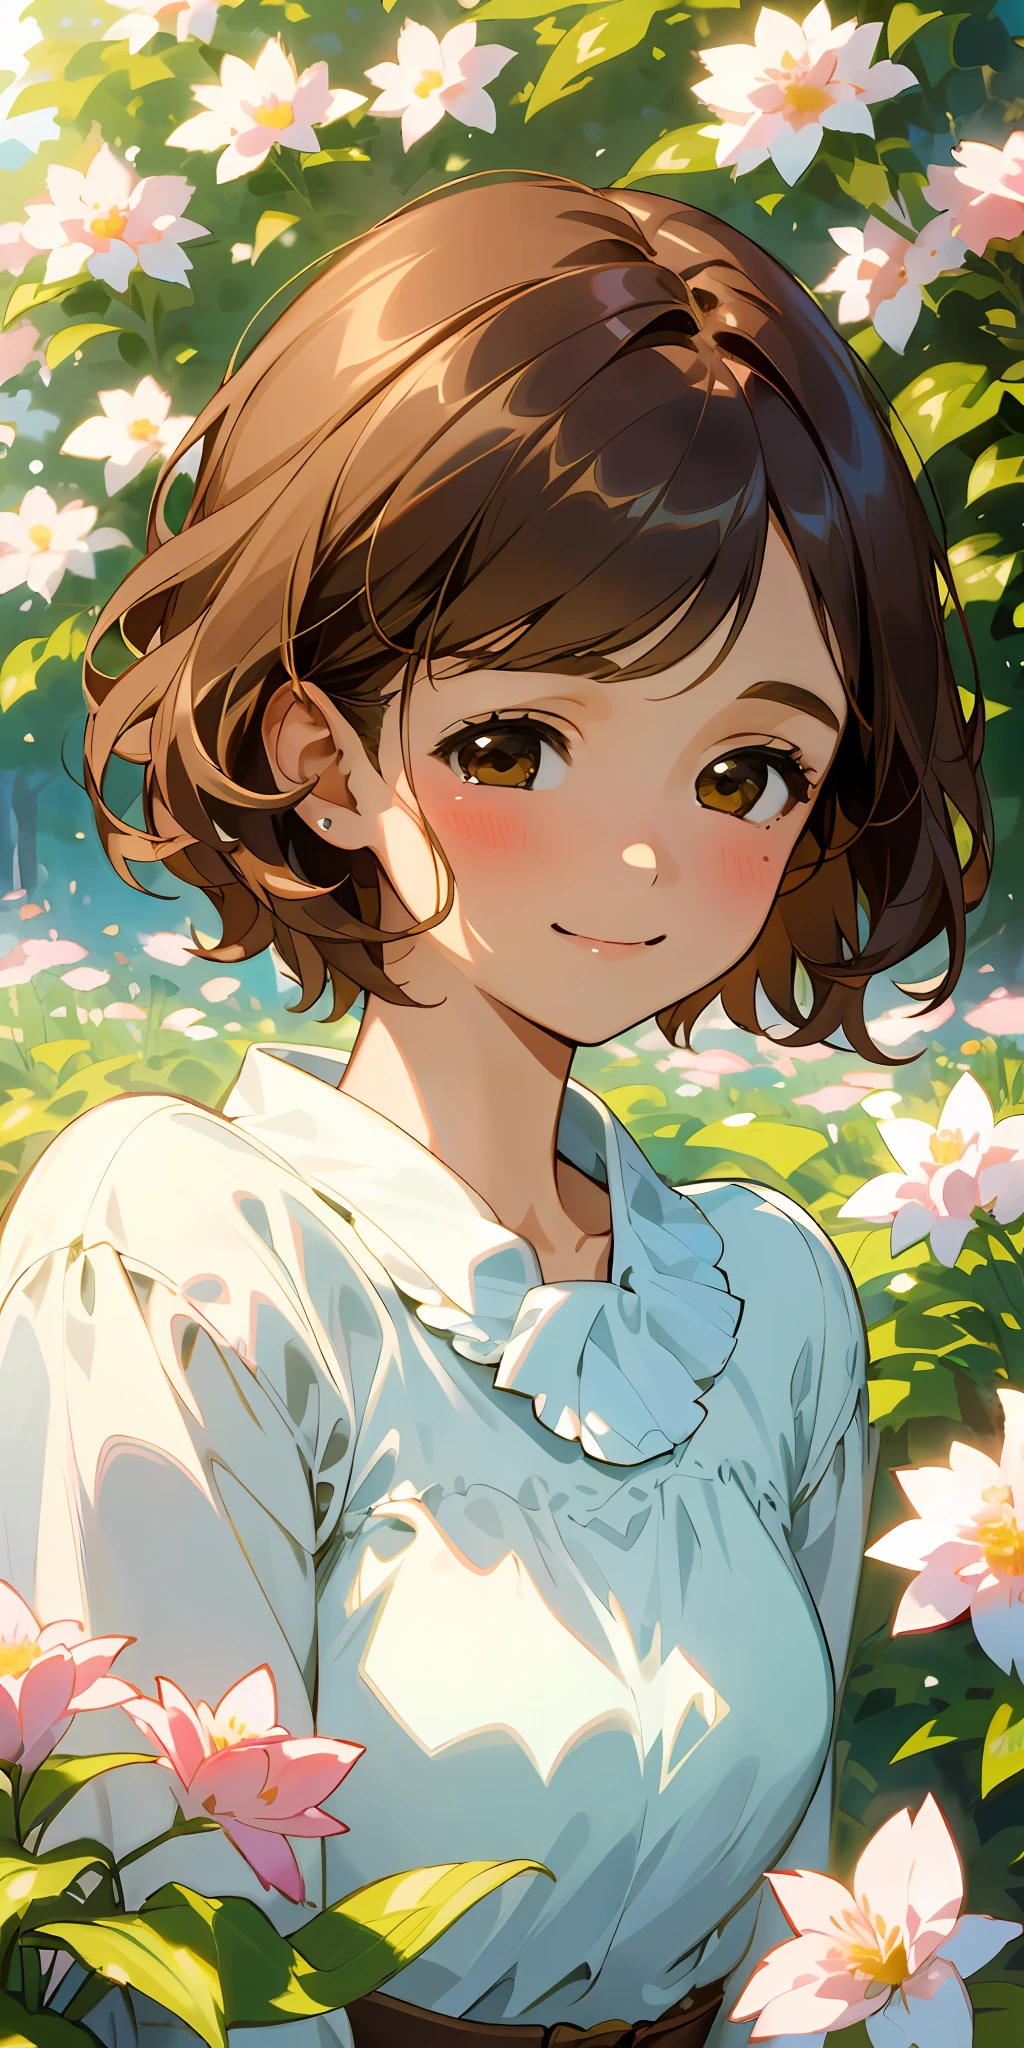 (顶级品质, 杰作, 超现实), 一幅美丽精致的短发女孩肖像, 棕色的头发, 微笑, 柔和的表情, 眯着眼睛充满喜悦, 背景景观是一个花园，花瓣和花球四处飞舞. --v6